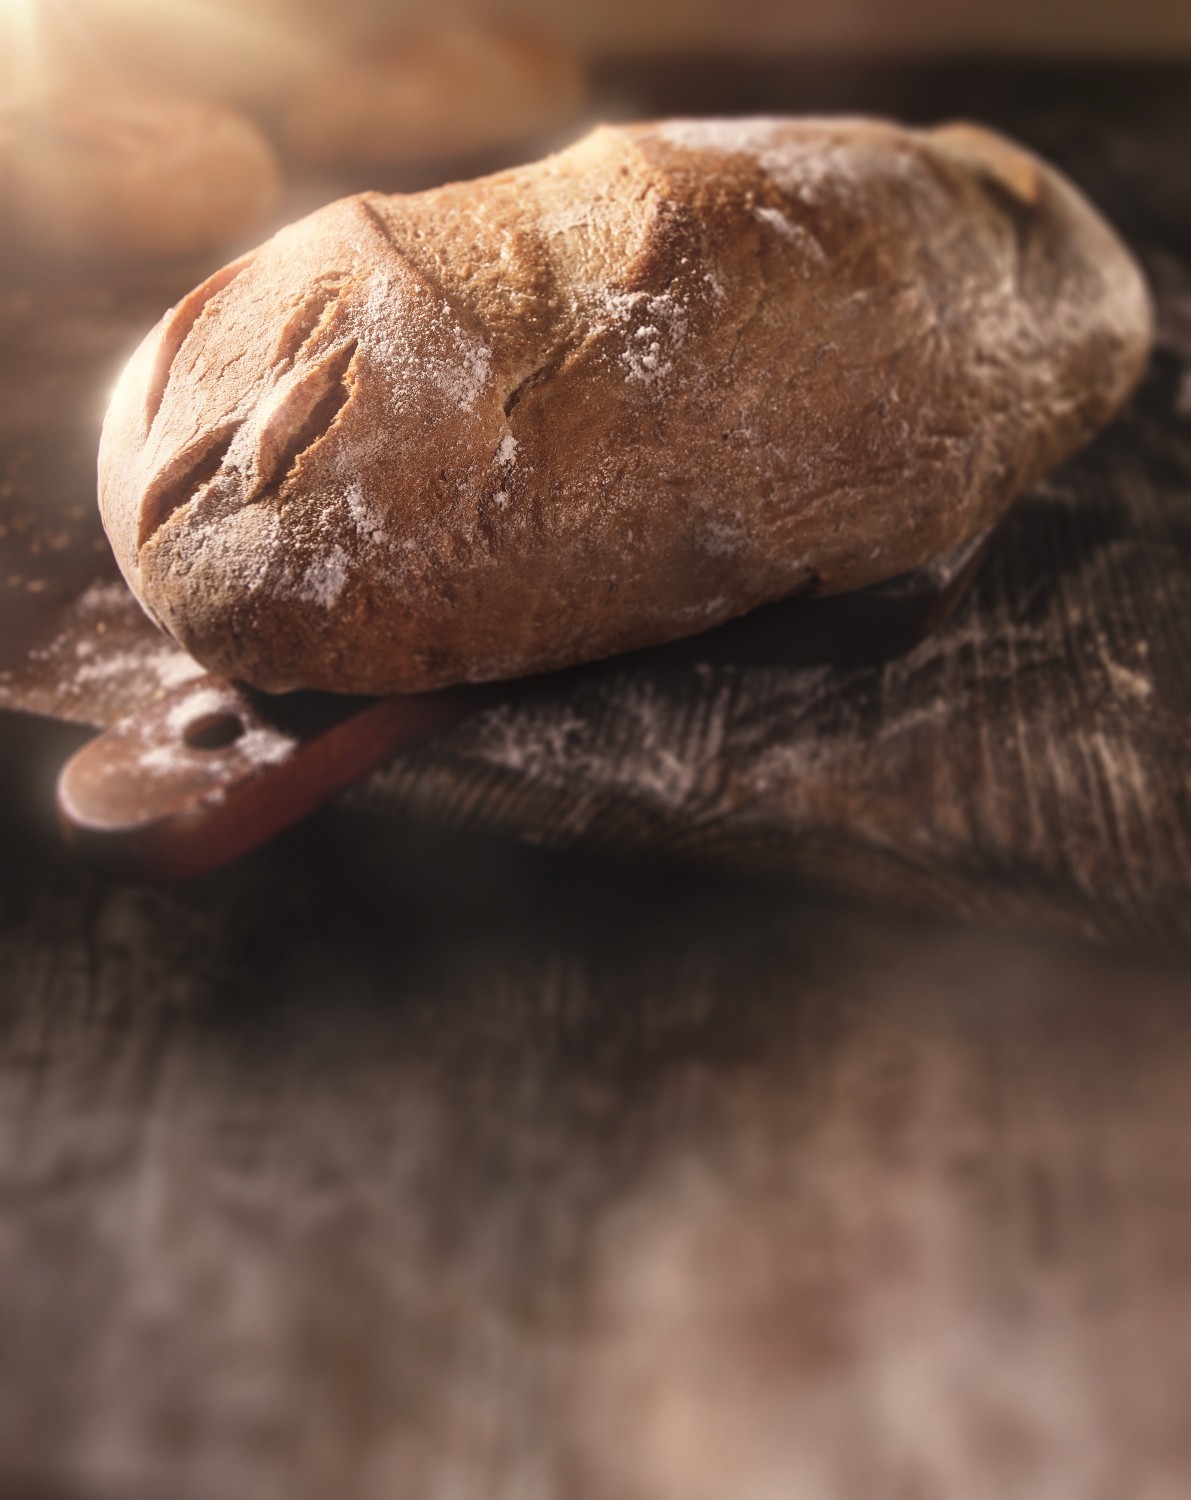 Ratgeber Brot backen (1): Was Verbraucher über Mehlsorten wissen sollten - News, Bild 1